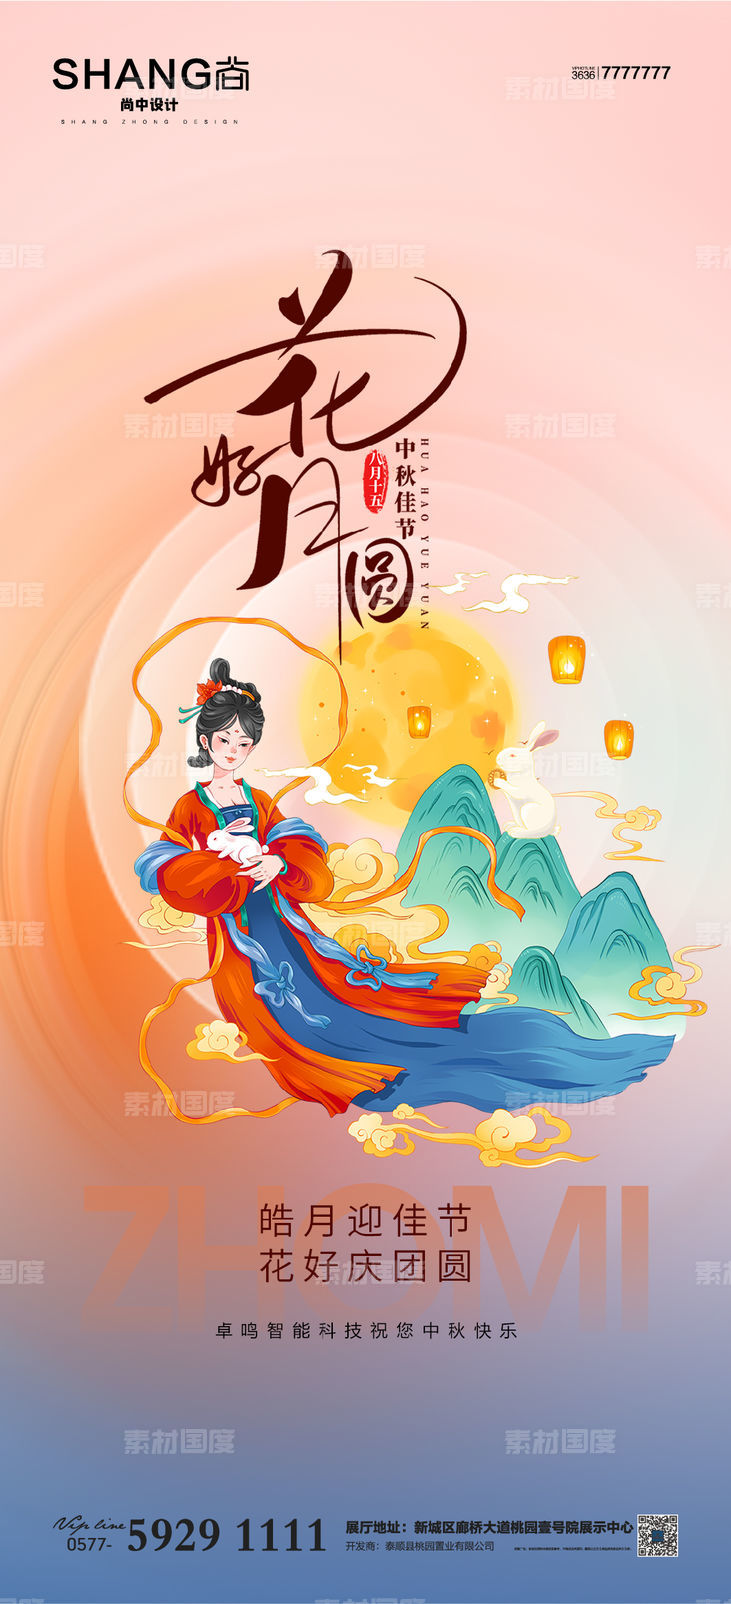 地产 中秋节 传统节日 高端 大气 借势 海报